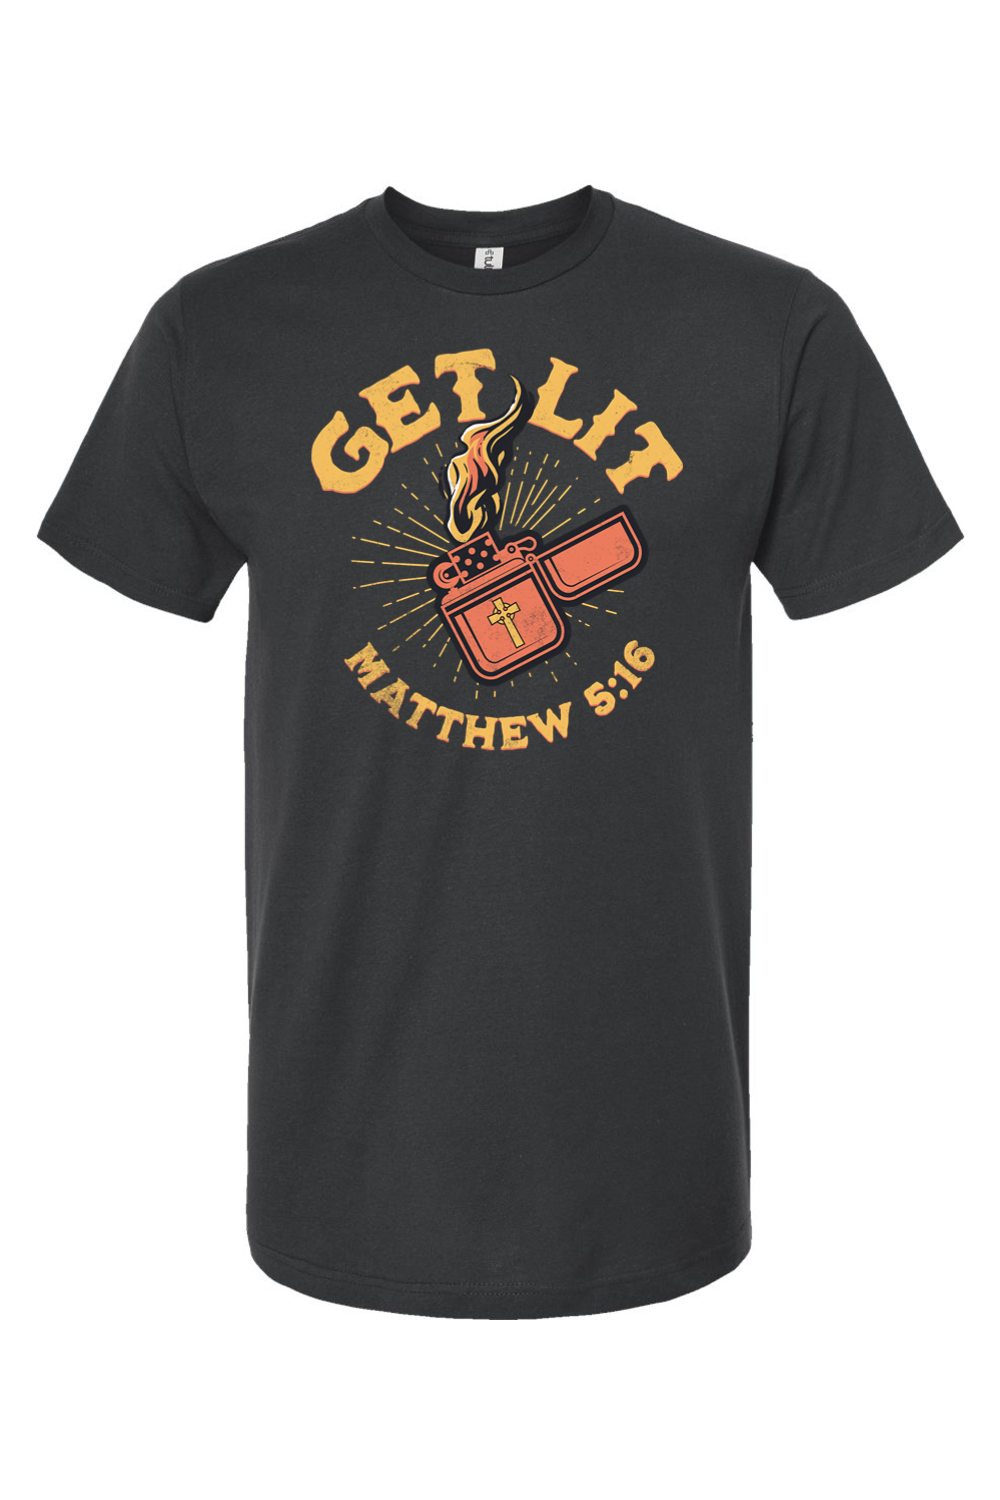 Get Lit - Matthew 5:16 - T-Shirt